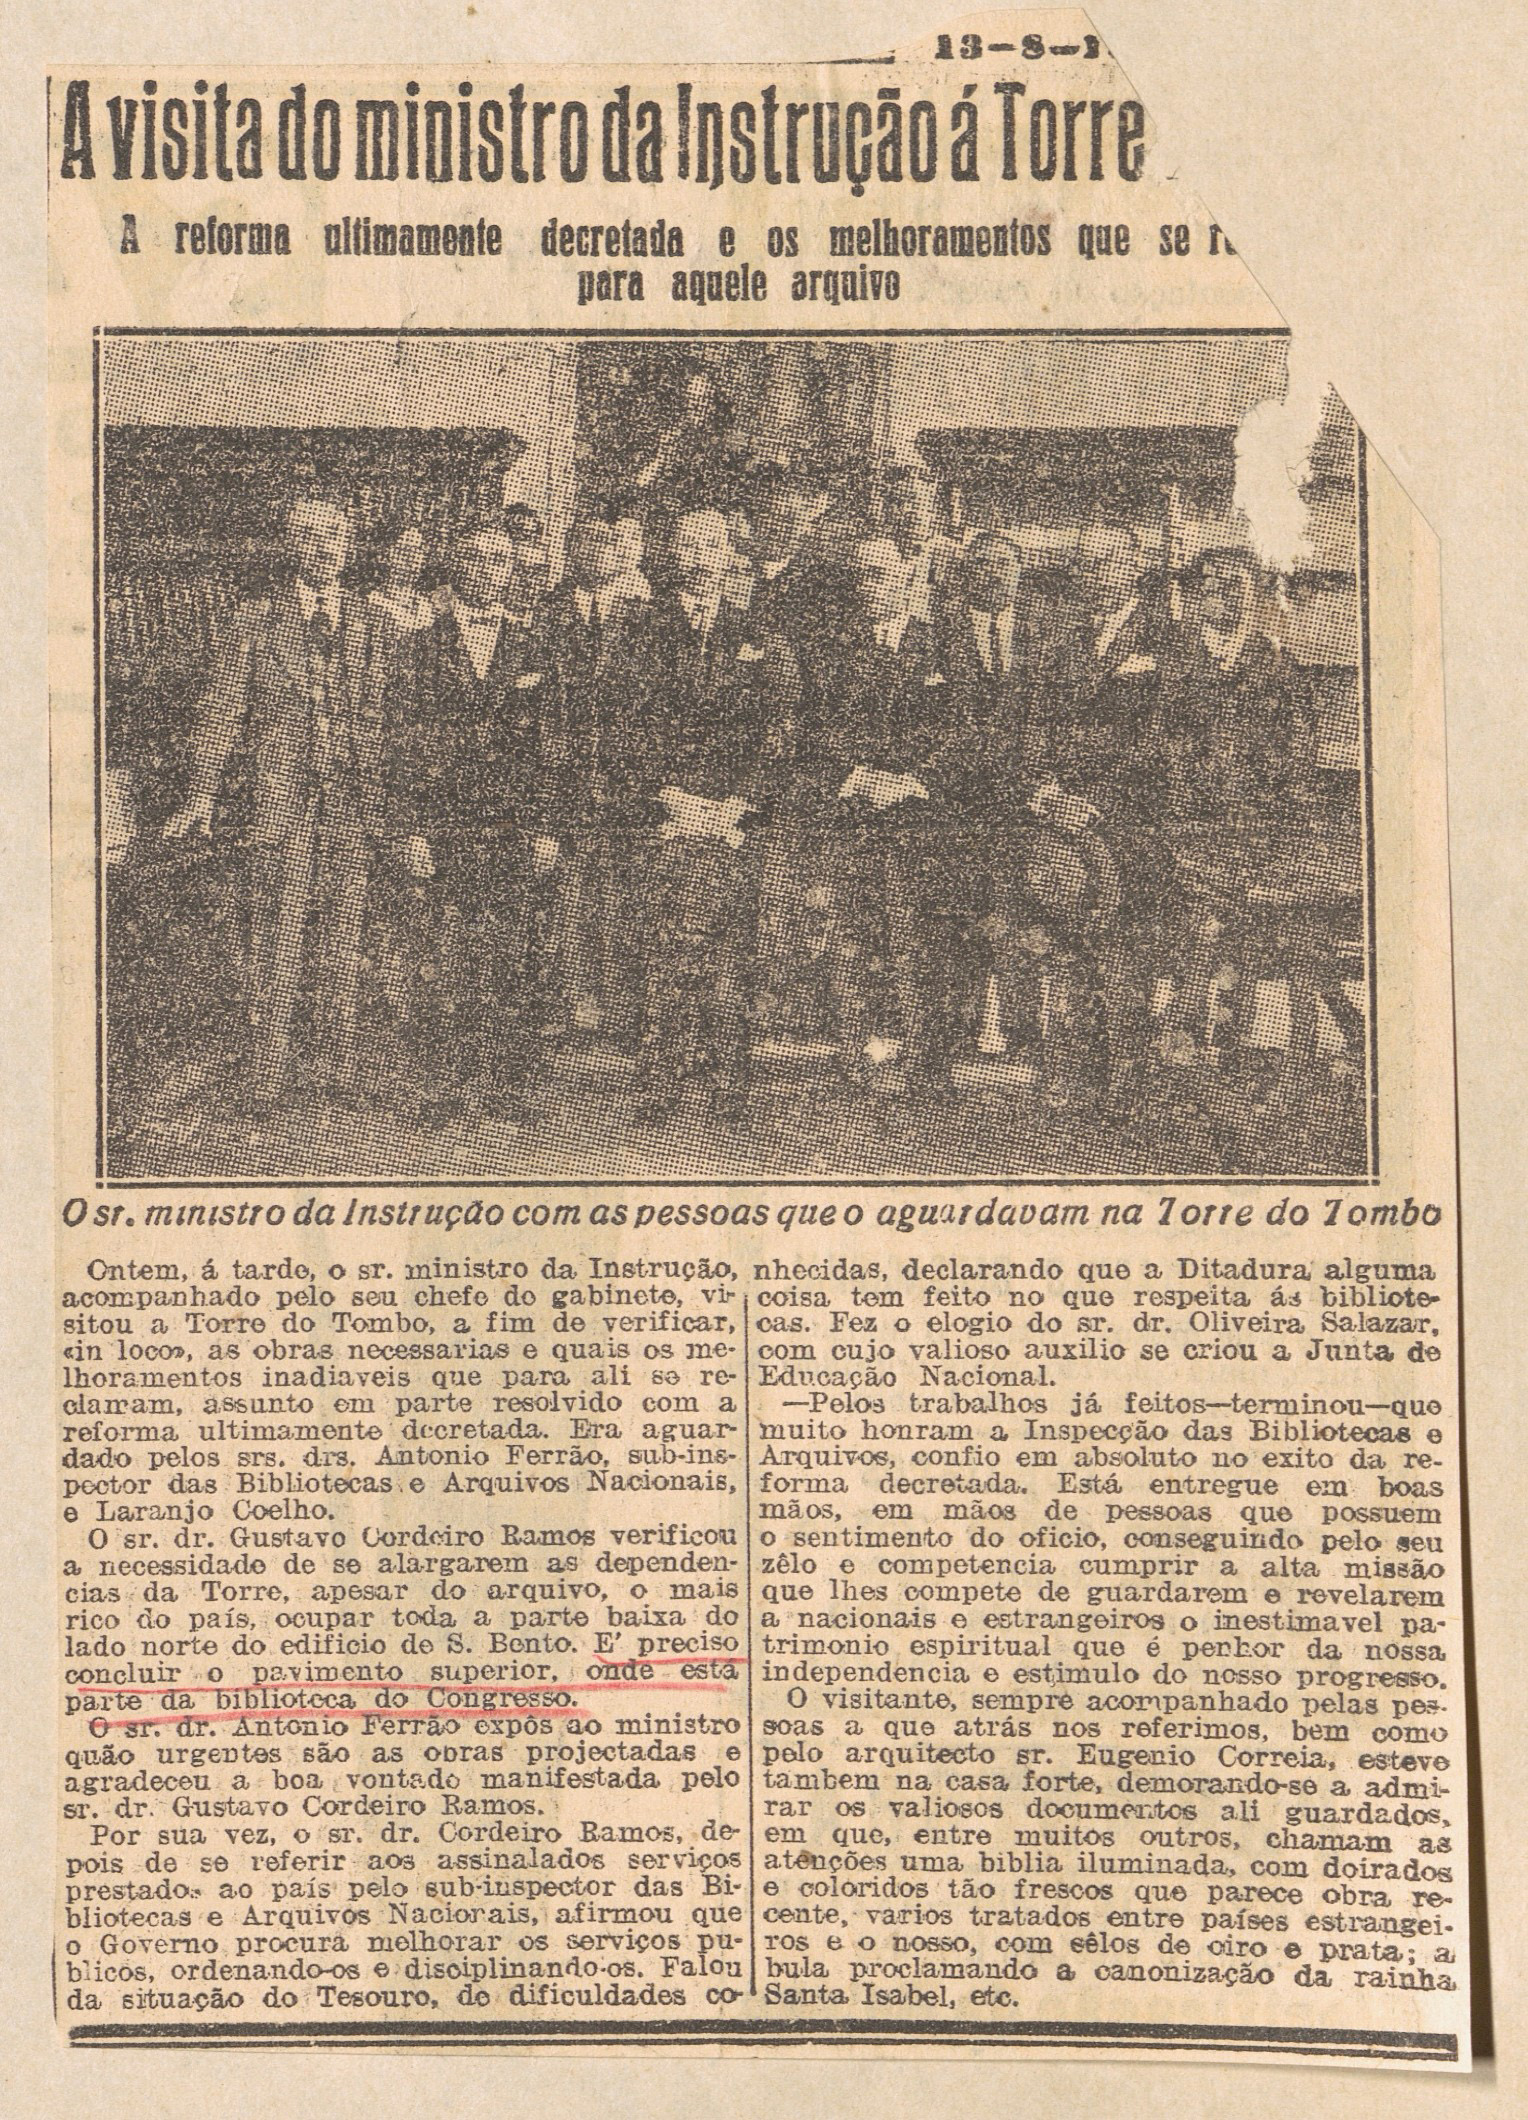 Notícia sobre a visita do Ministro da Instrução à Torre do Tombo, Diário de Notícias, 13-08-1931